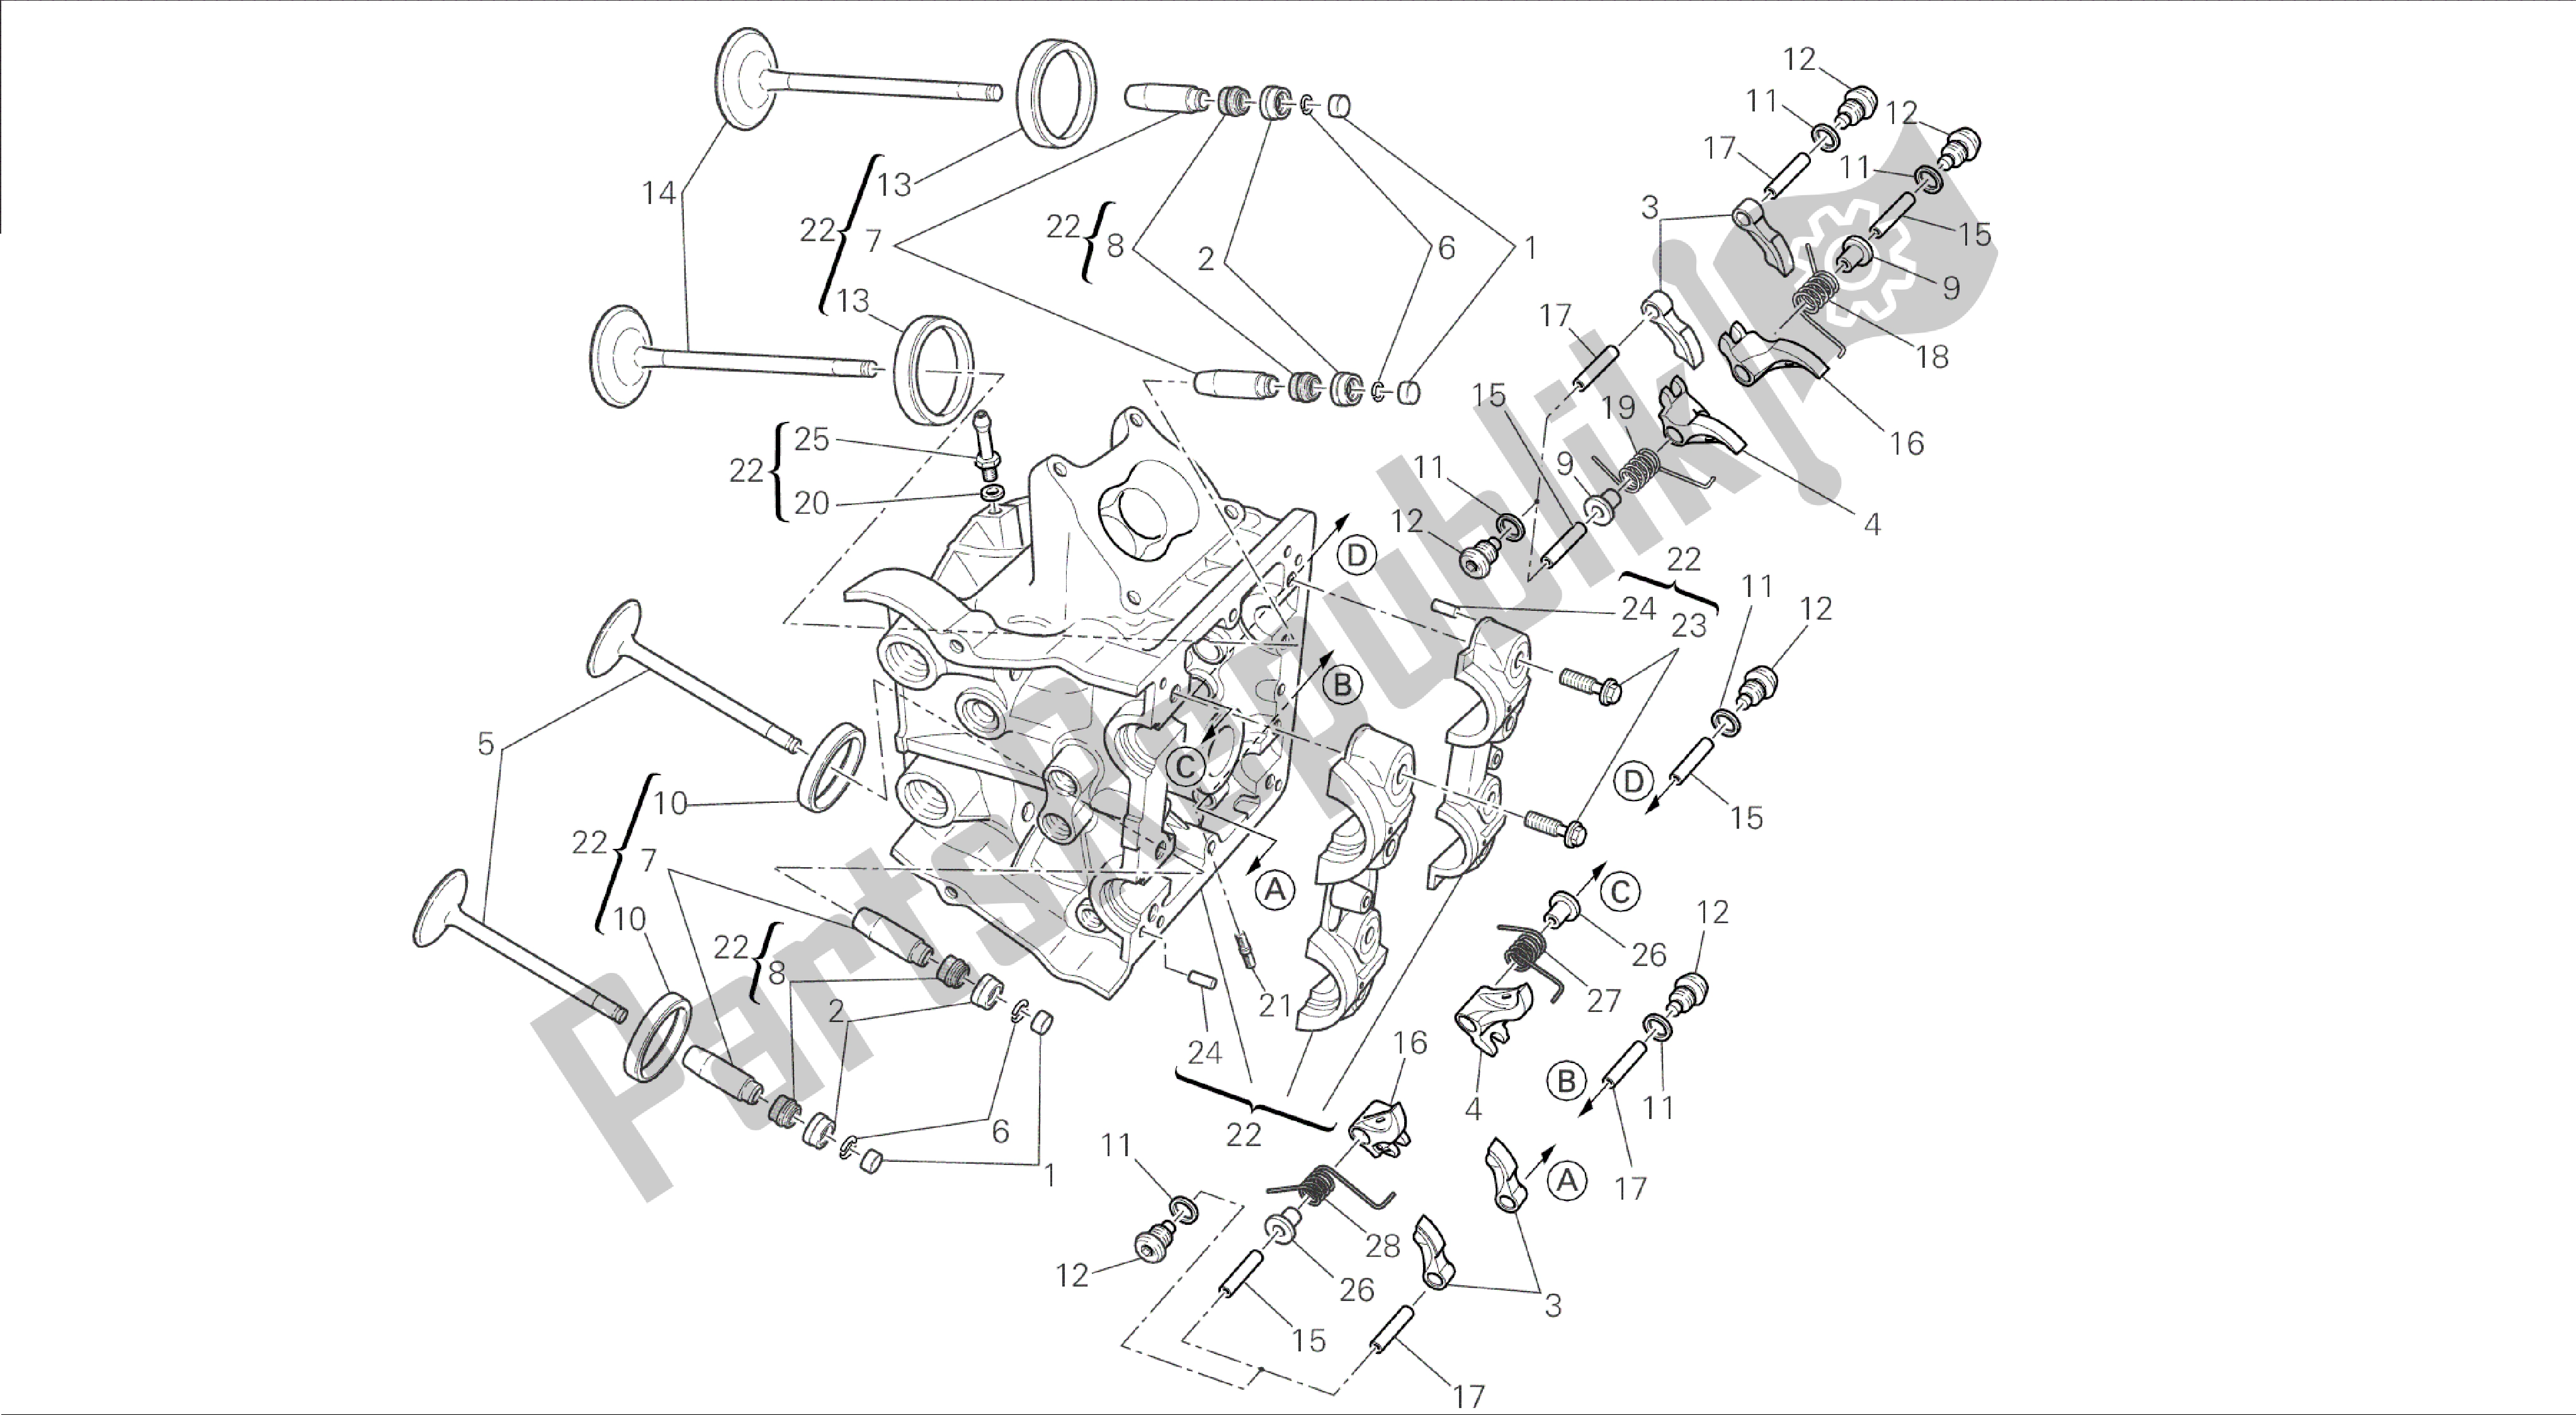 Todas las partes para Dibujo 015 - Motor De Grupo De Culata Horizontal [mod: Dvl] de Ducati Diavel 1200 2015